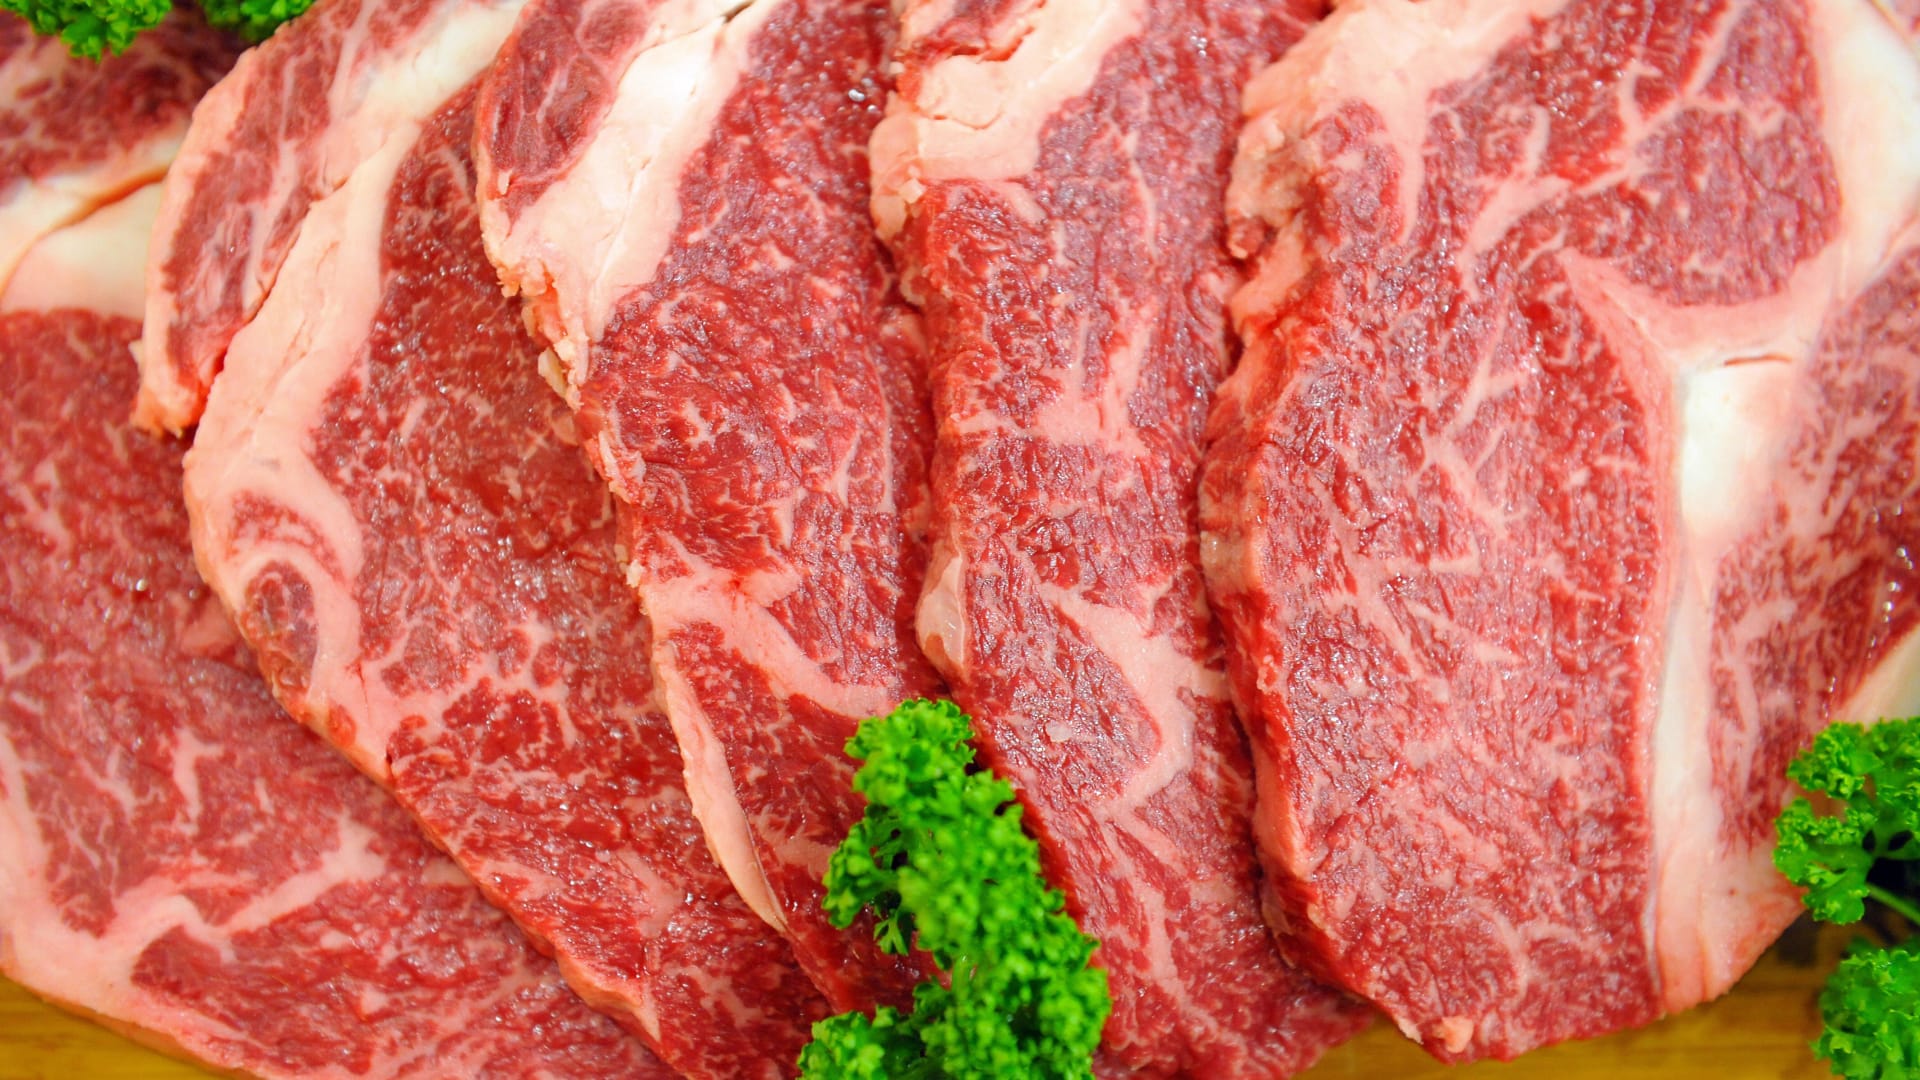 دراسة: تناول اللحوم الحمراء يرتبط بالموت المبكر